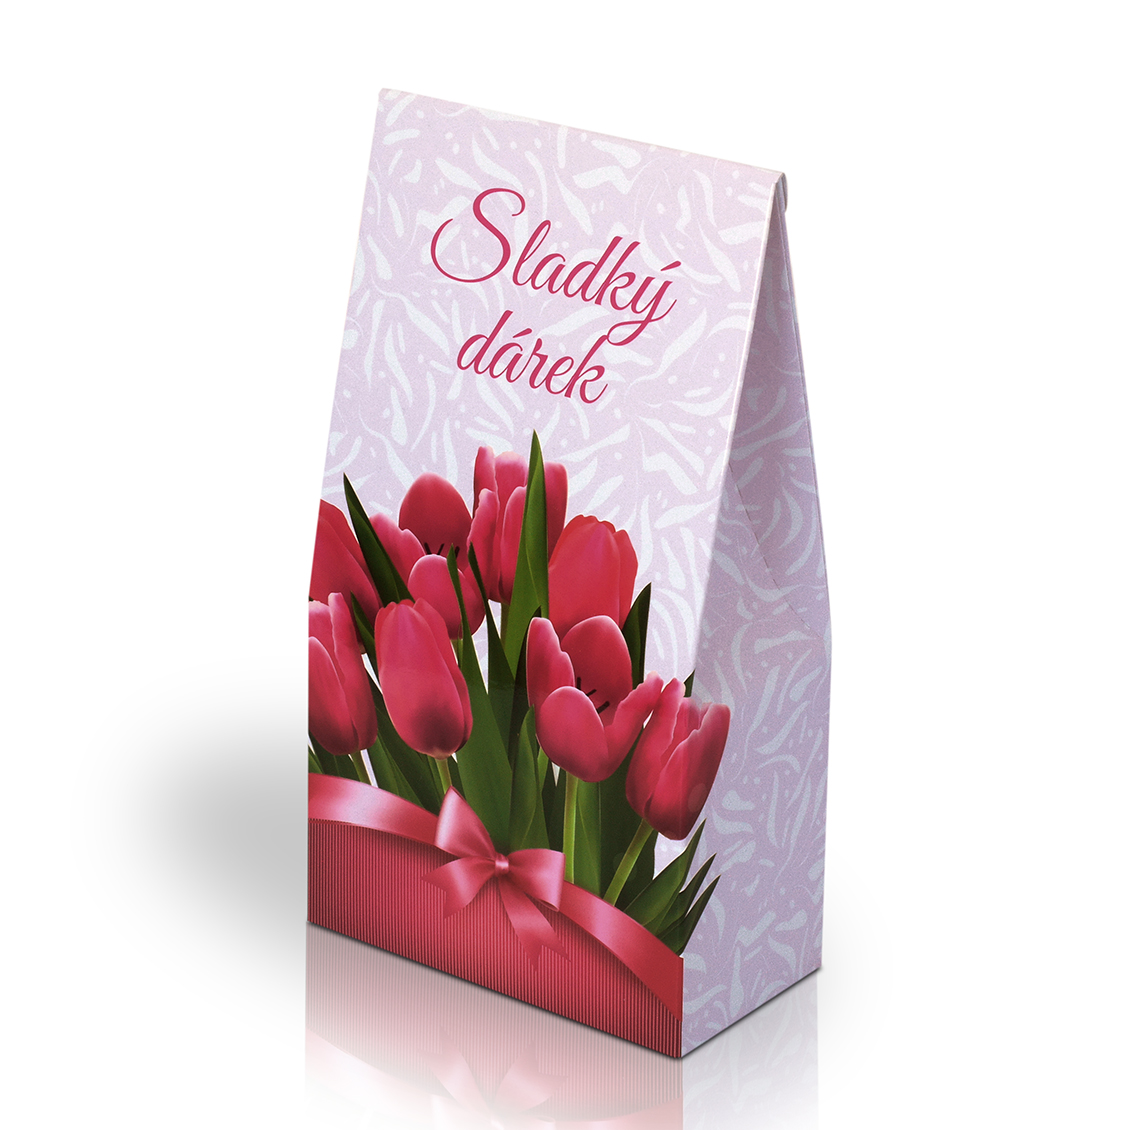 Italské pralinky - Sladký dárek s tulipány 100g (stříška)